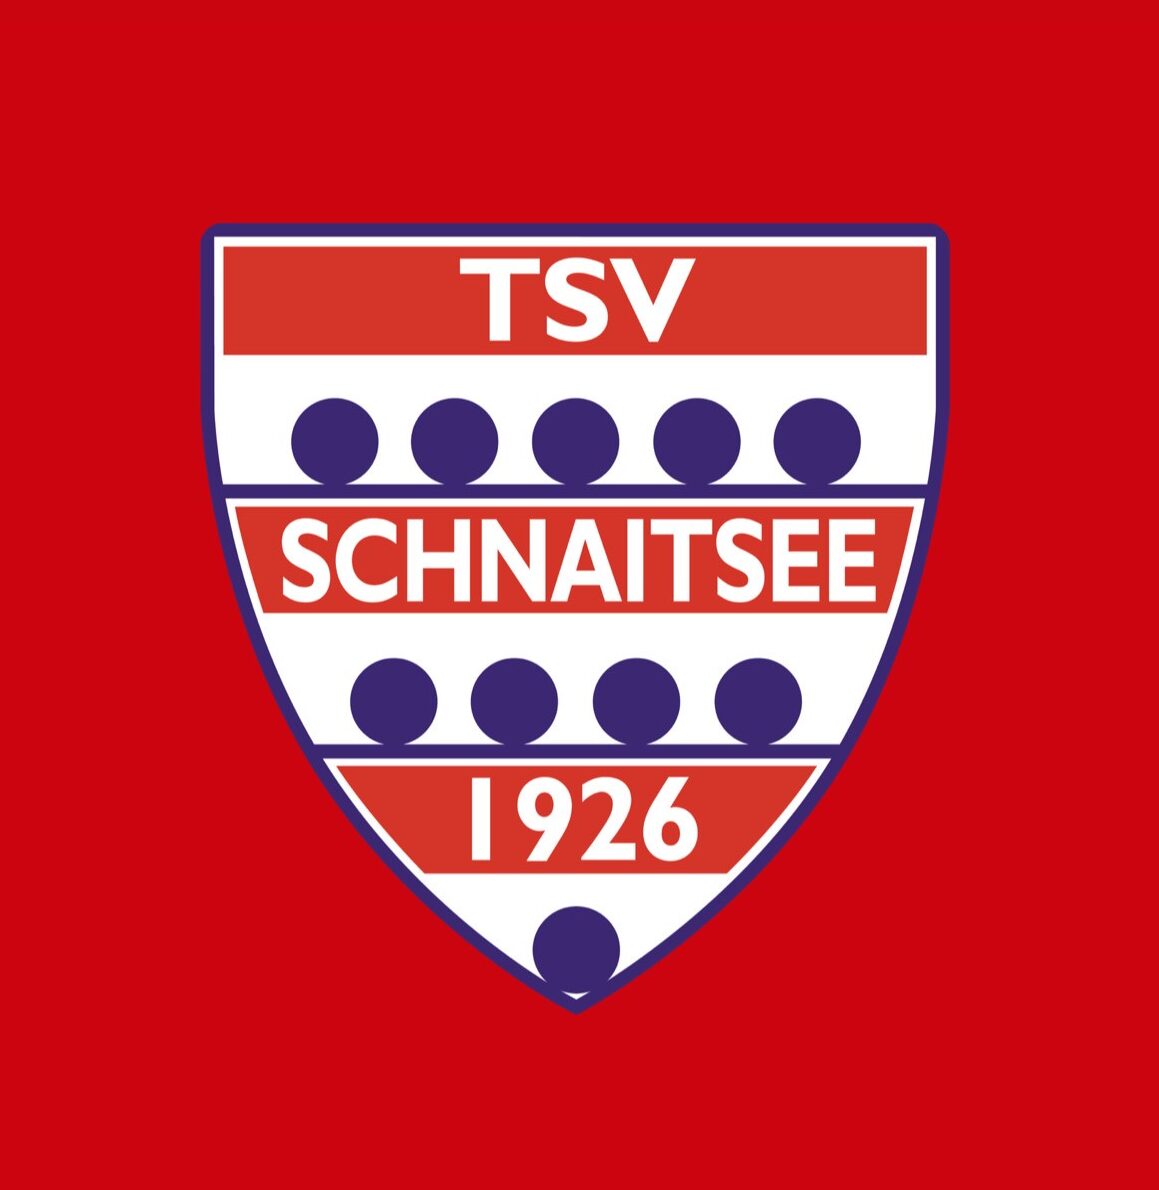 tsv_schnaitsee_1926